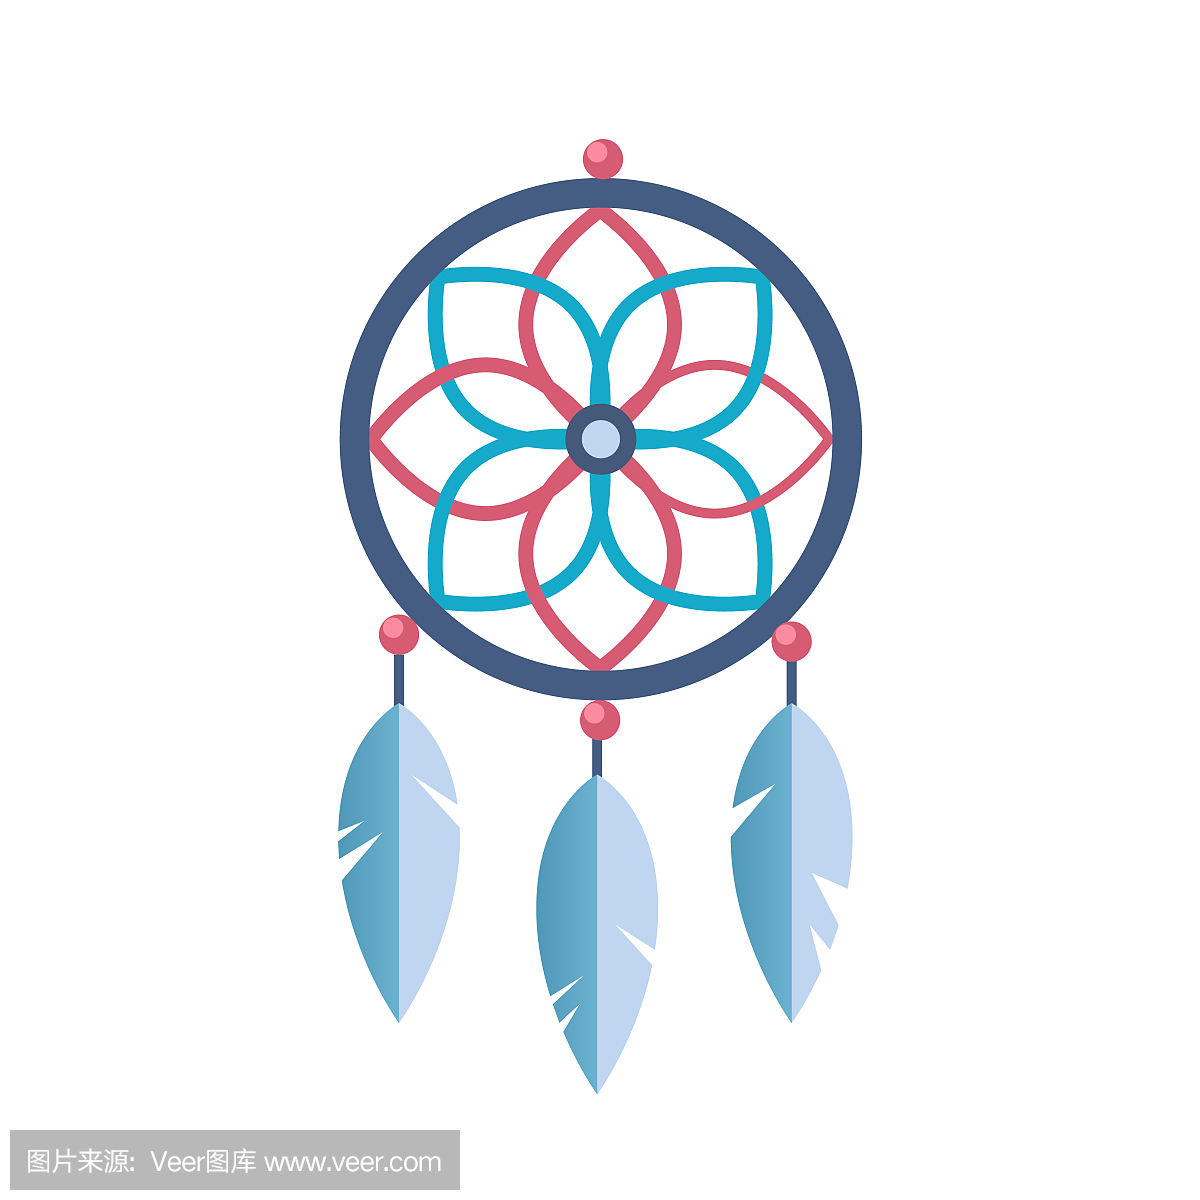 古代魔法部落的象征,精神护身符与模式,羽毛